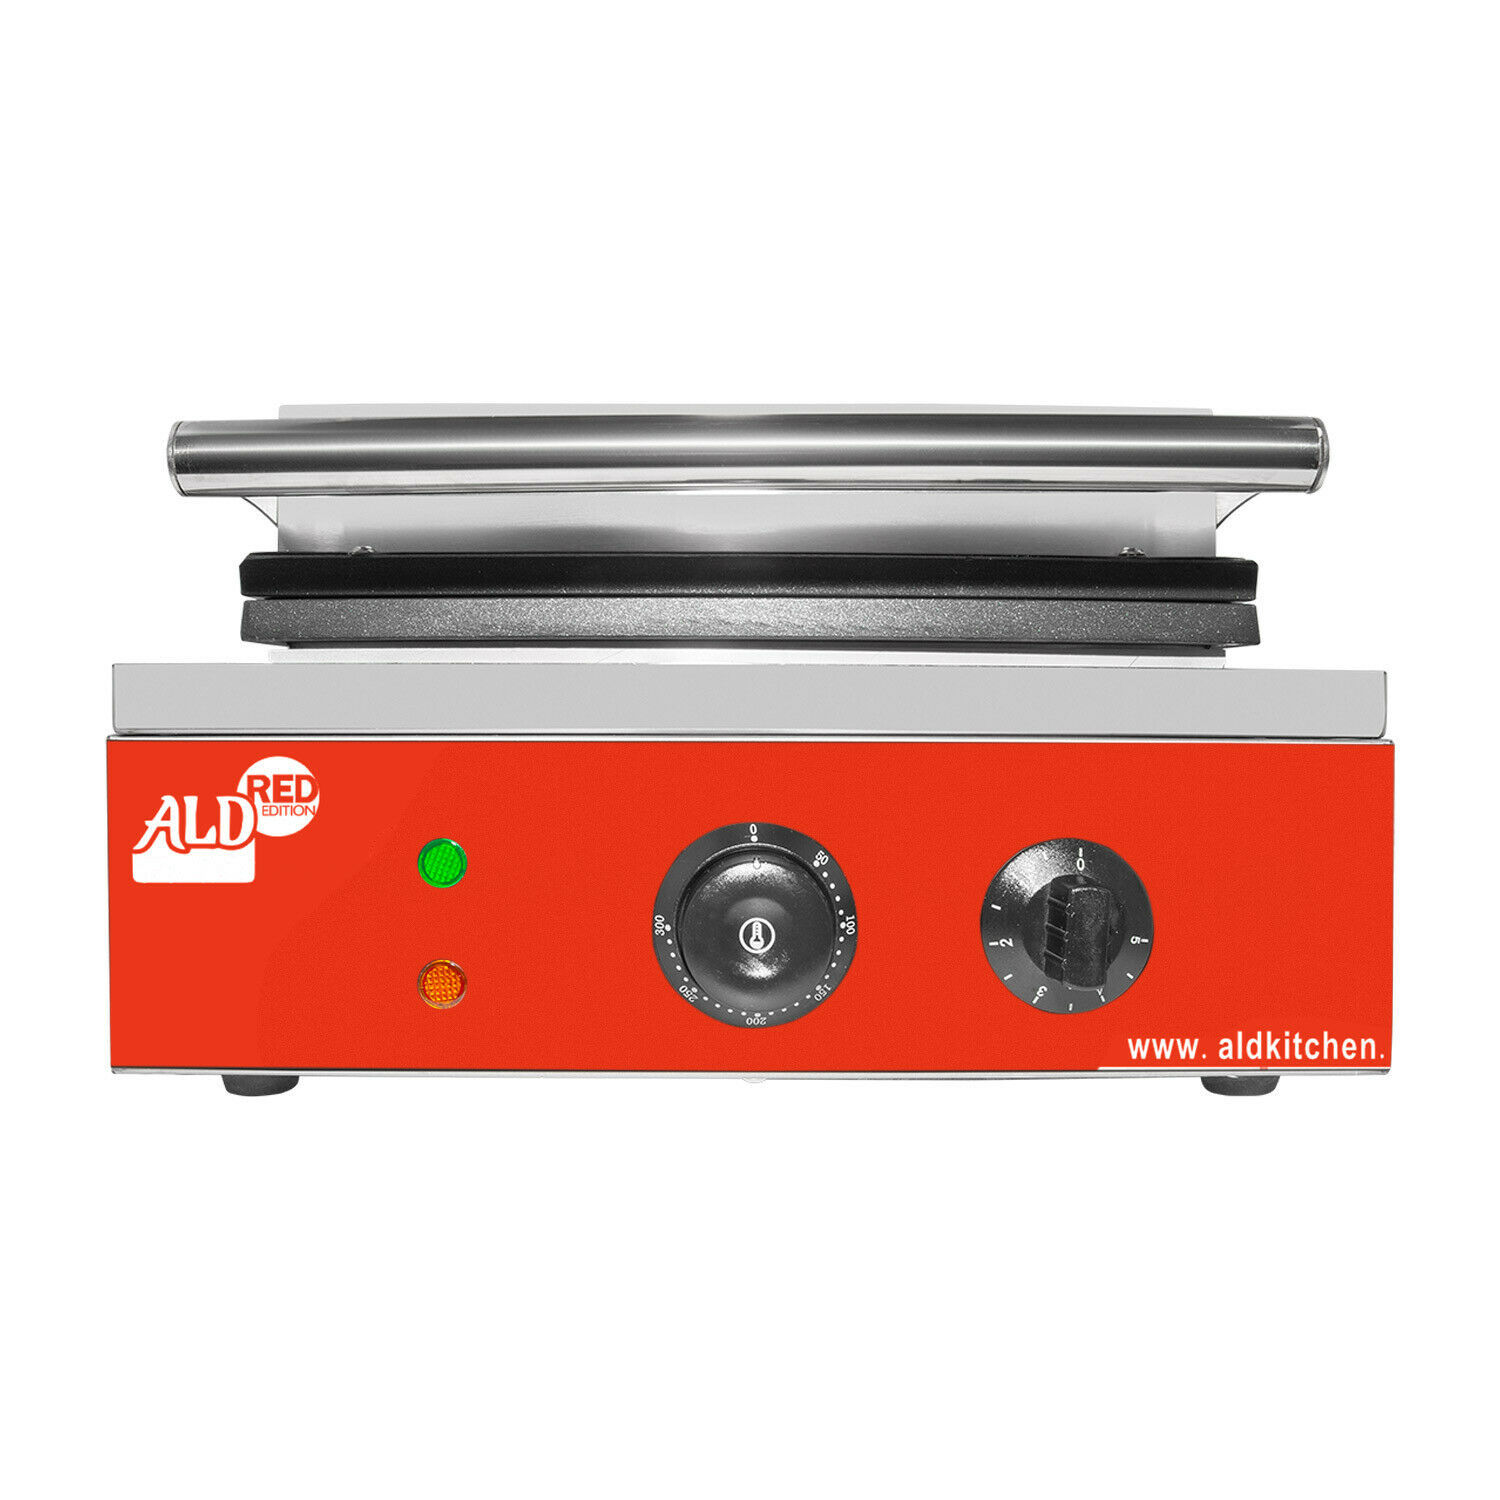 ALDKitchen Takoyaki Grill with Three Plates, Electric Takoyaki Machine, 84 Pcs, Nonstick